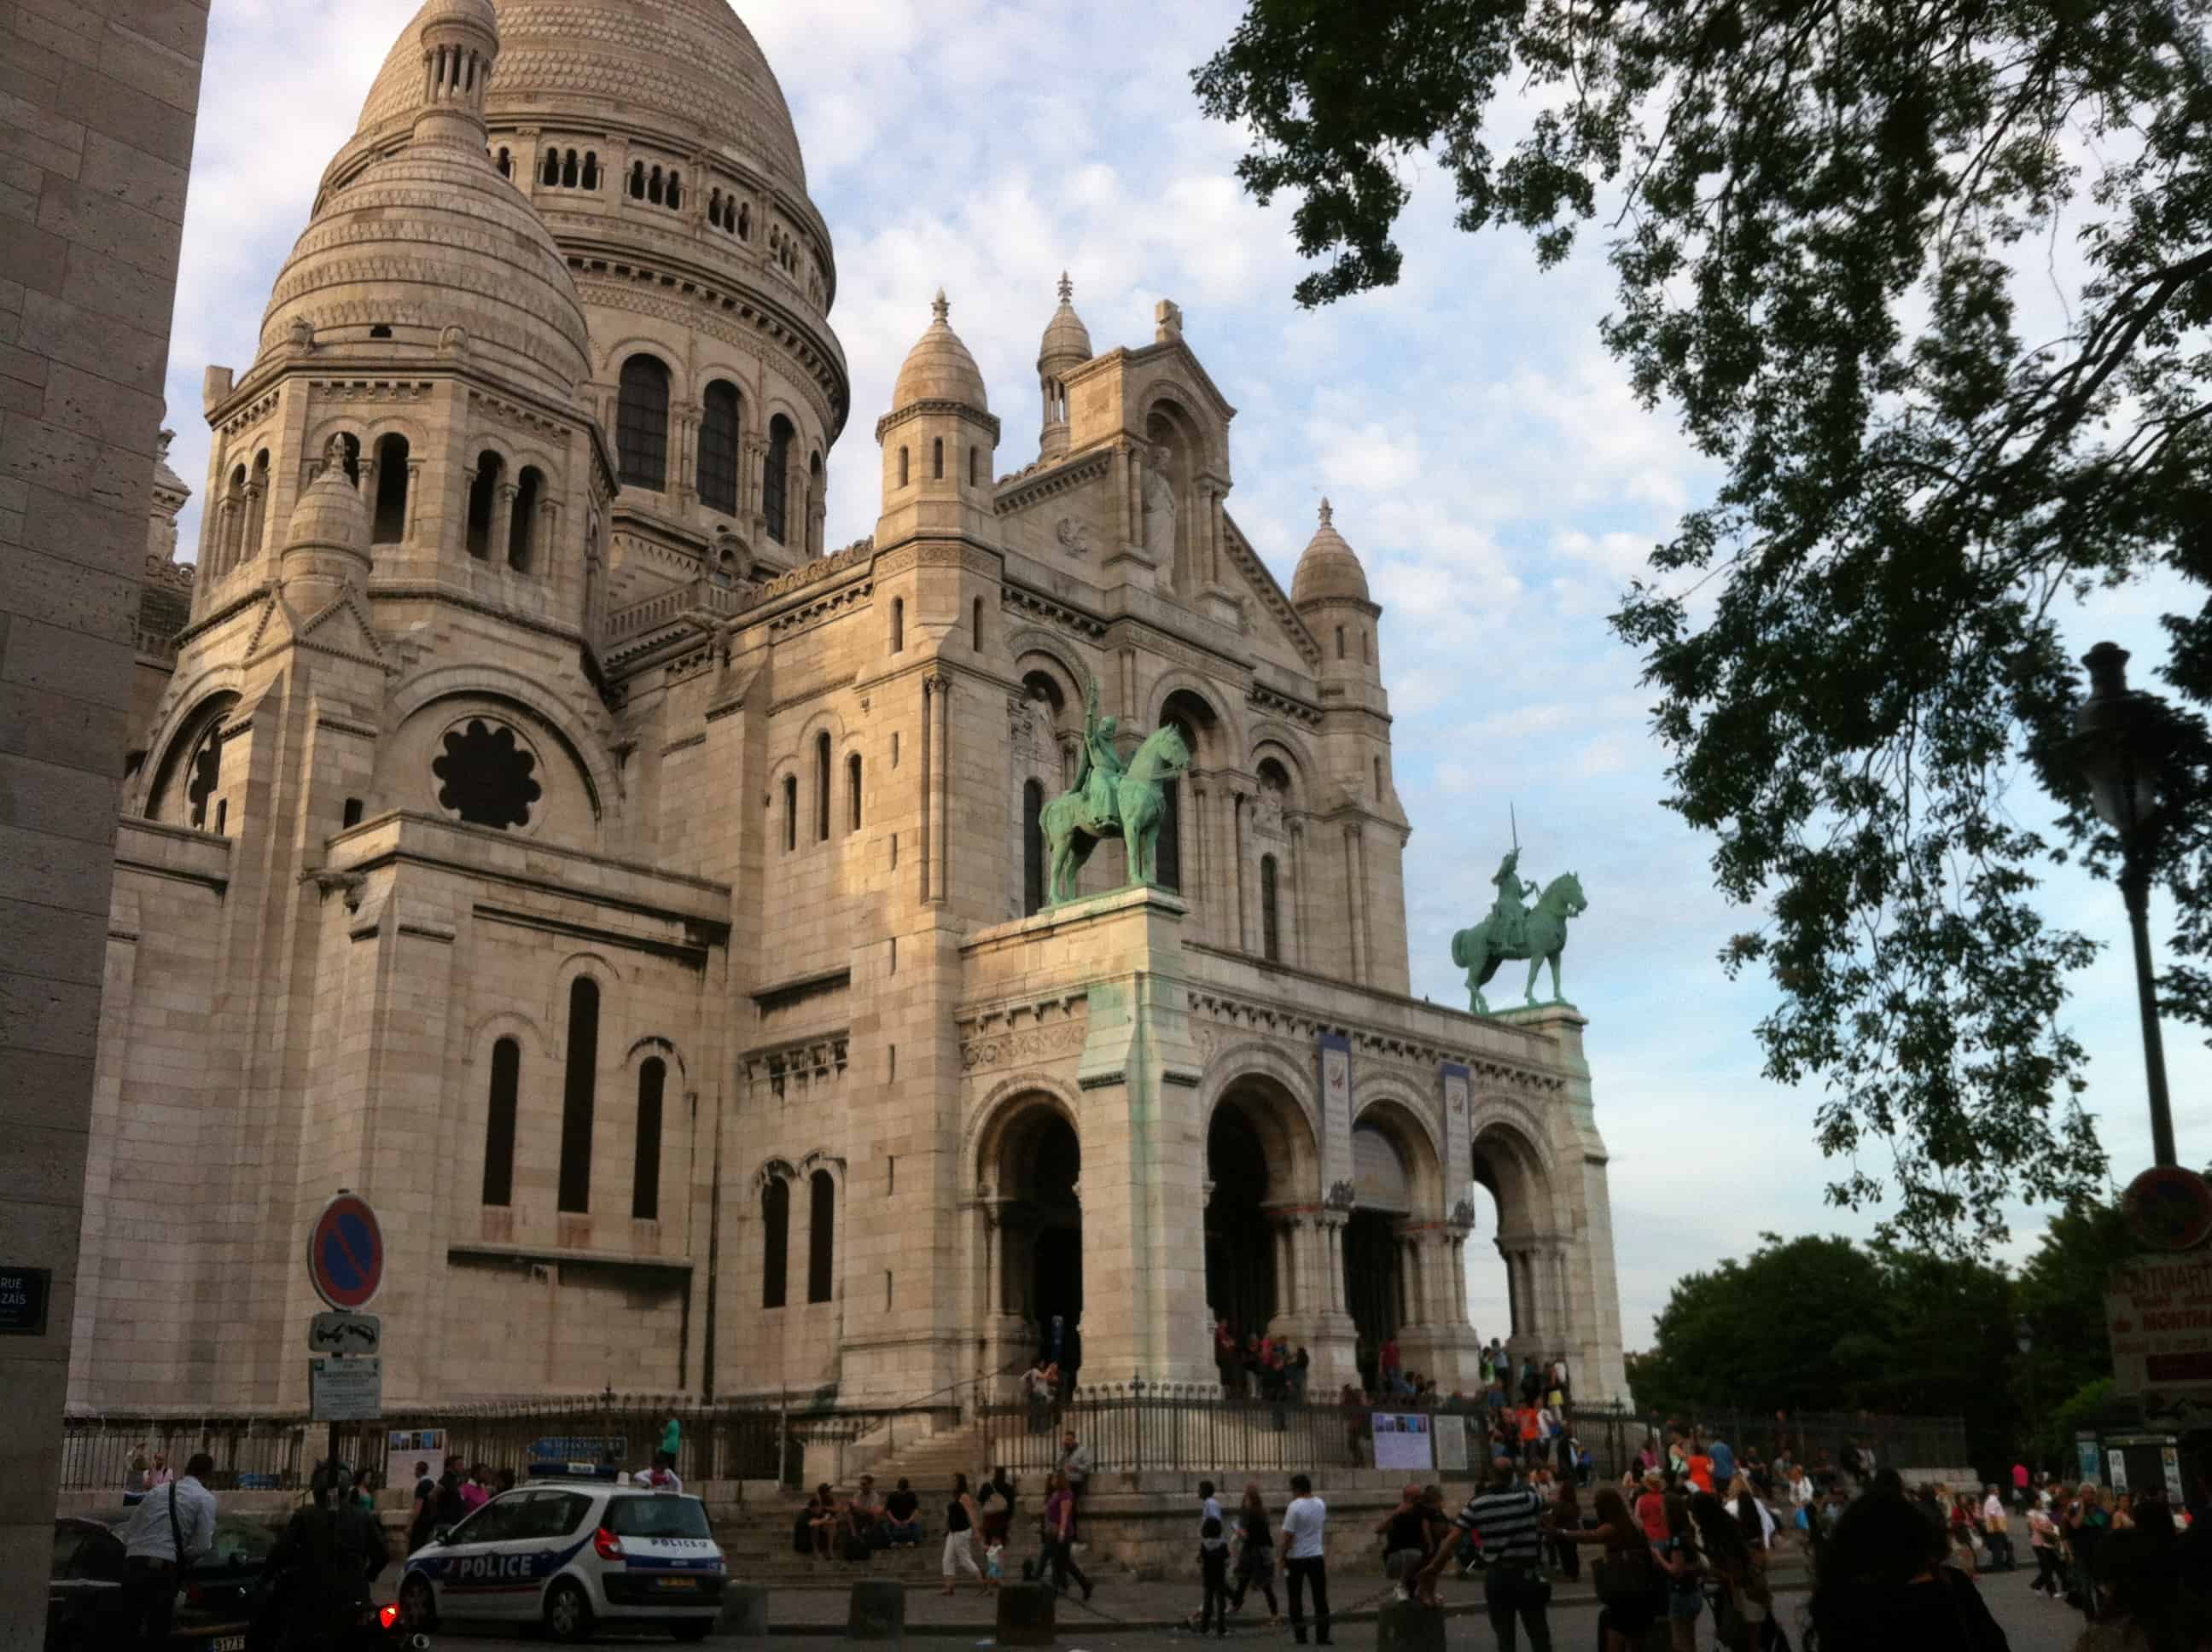 Sacrée coeur -Montmartre